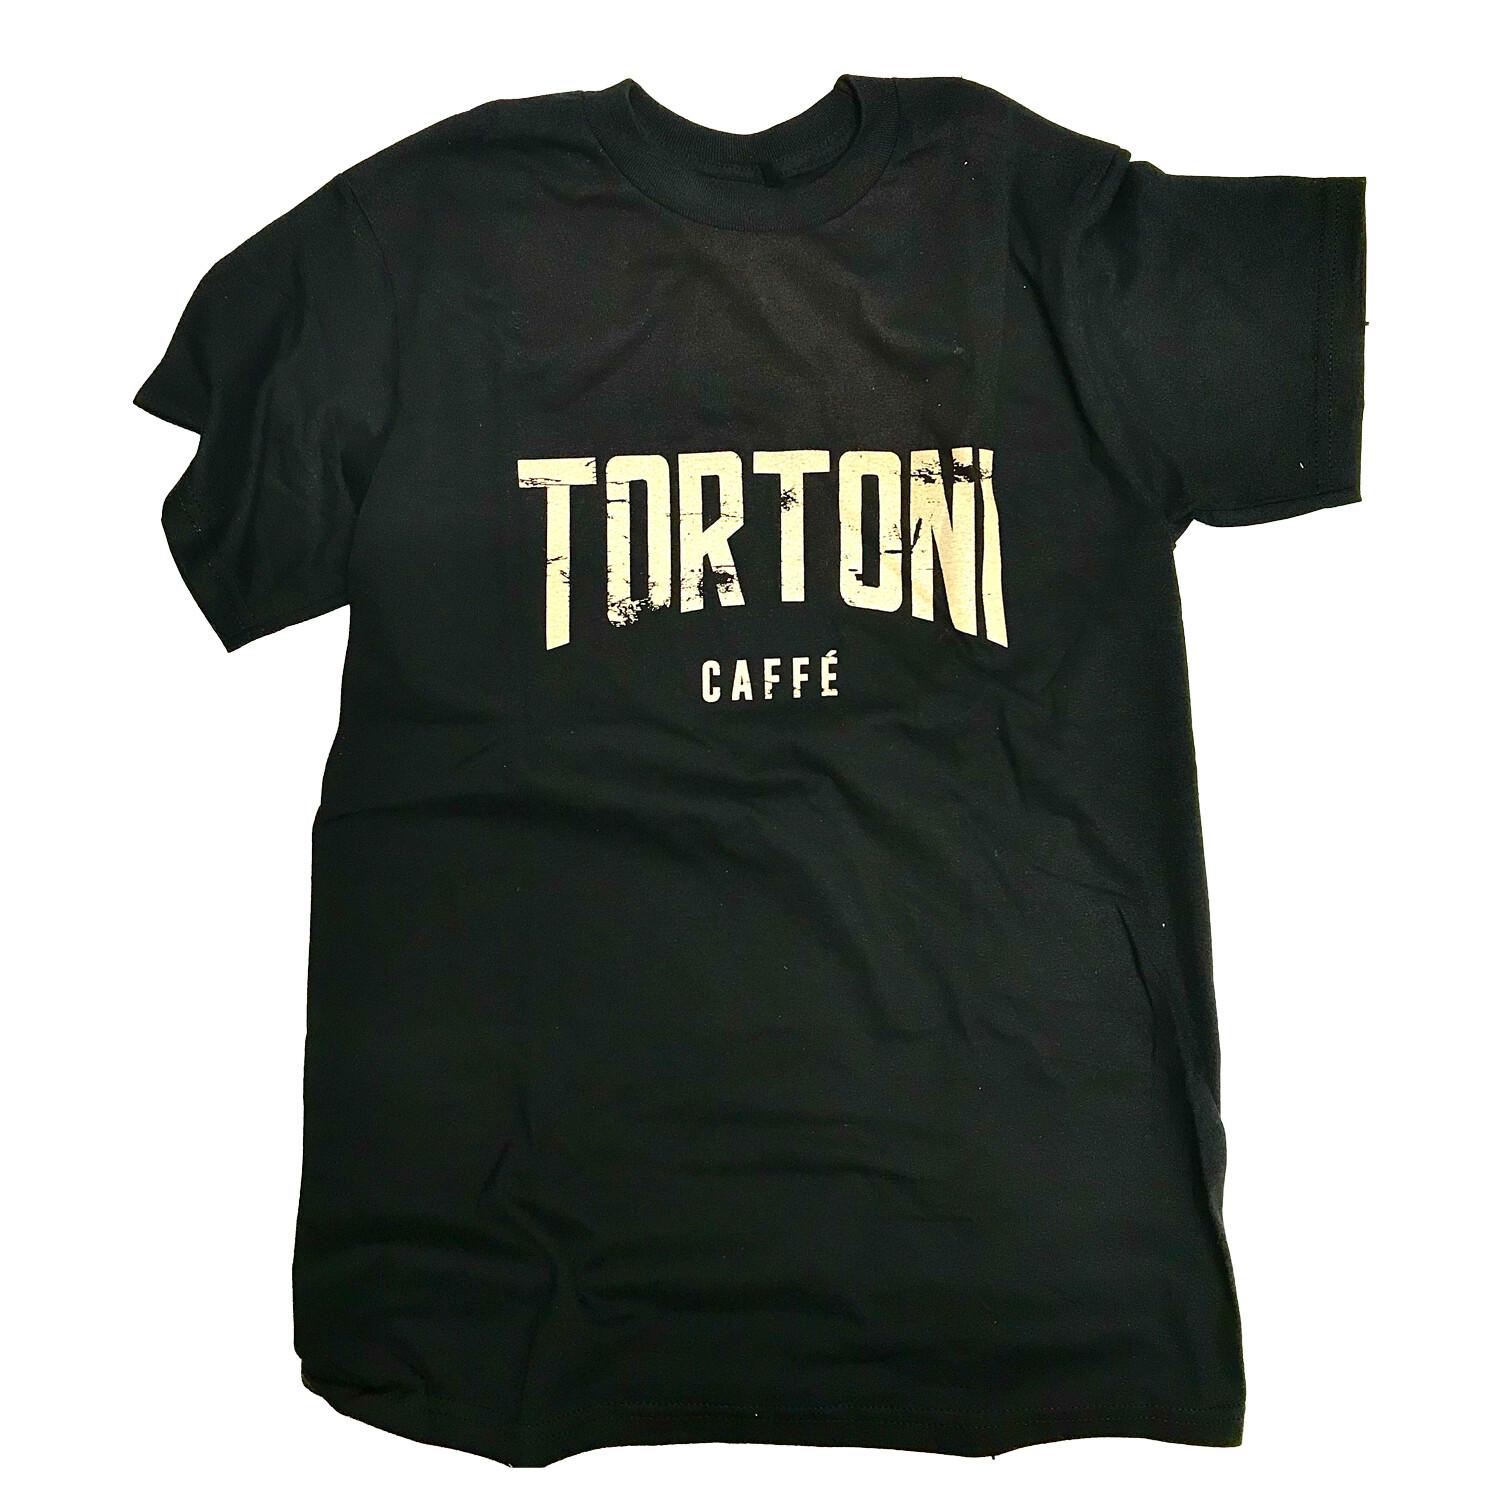 Tortoni Caffe Black Logo T-Shirt